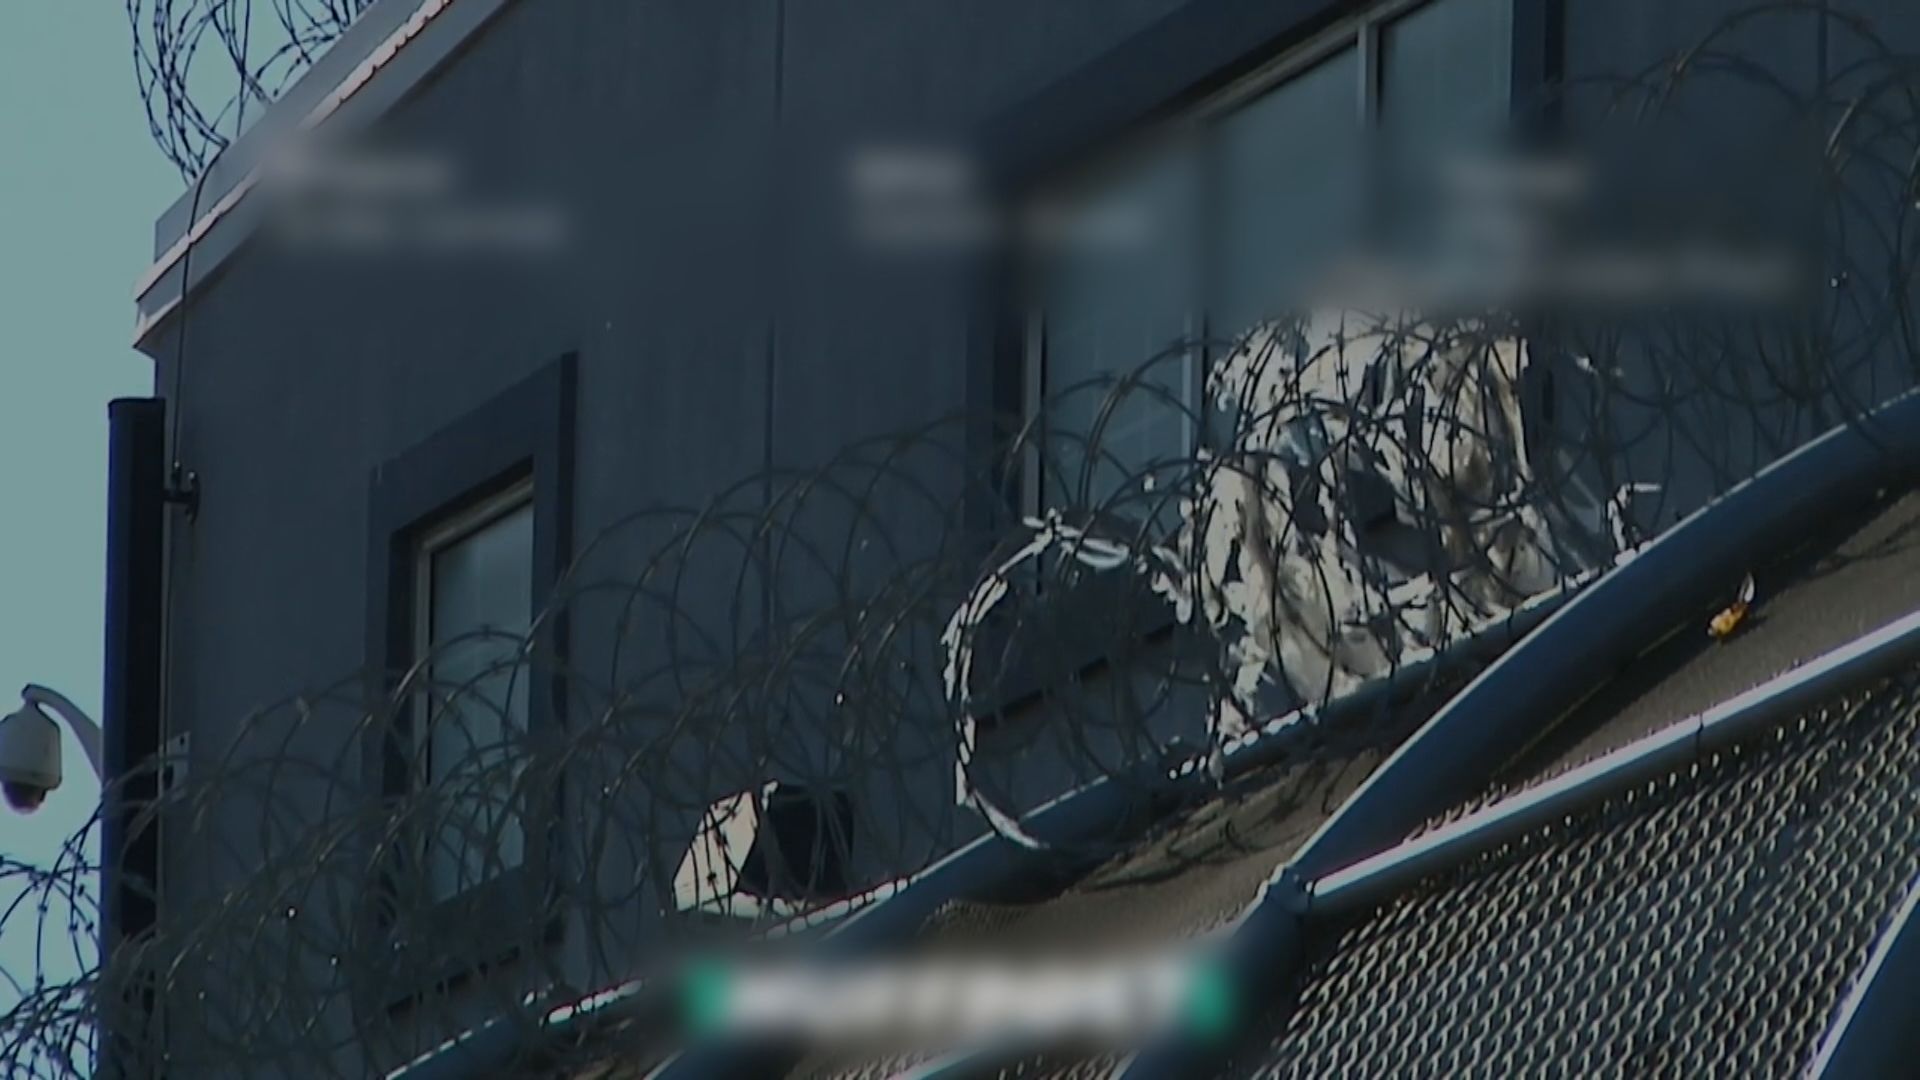 美國移民拘留中心被指控要婦女切除子宮　當局否認指控